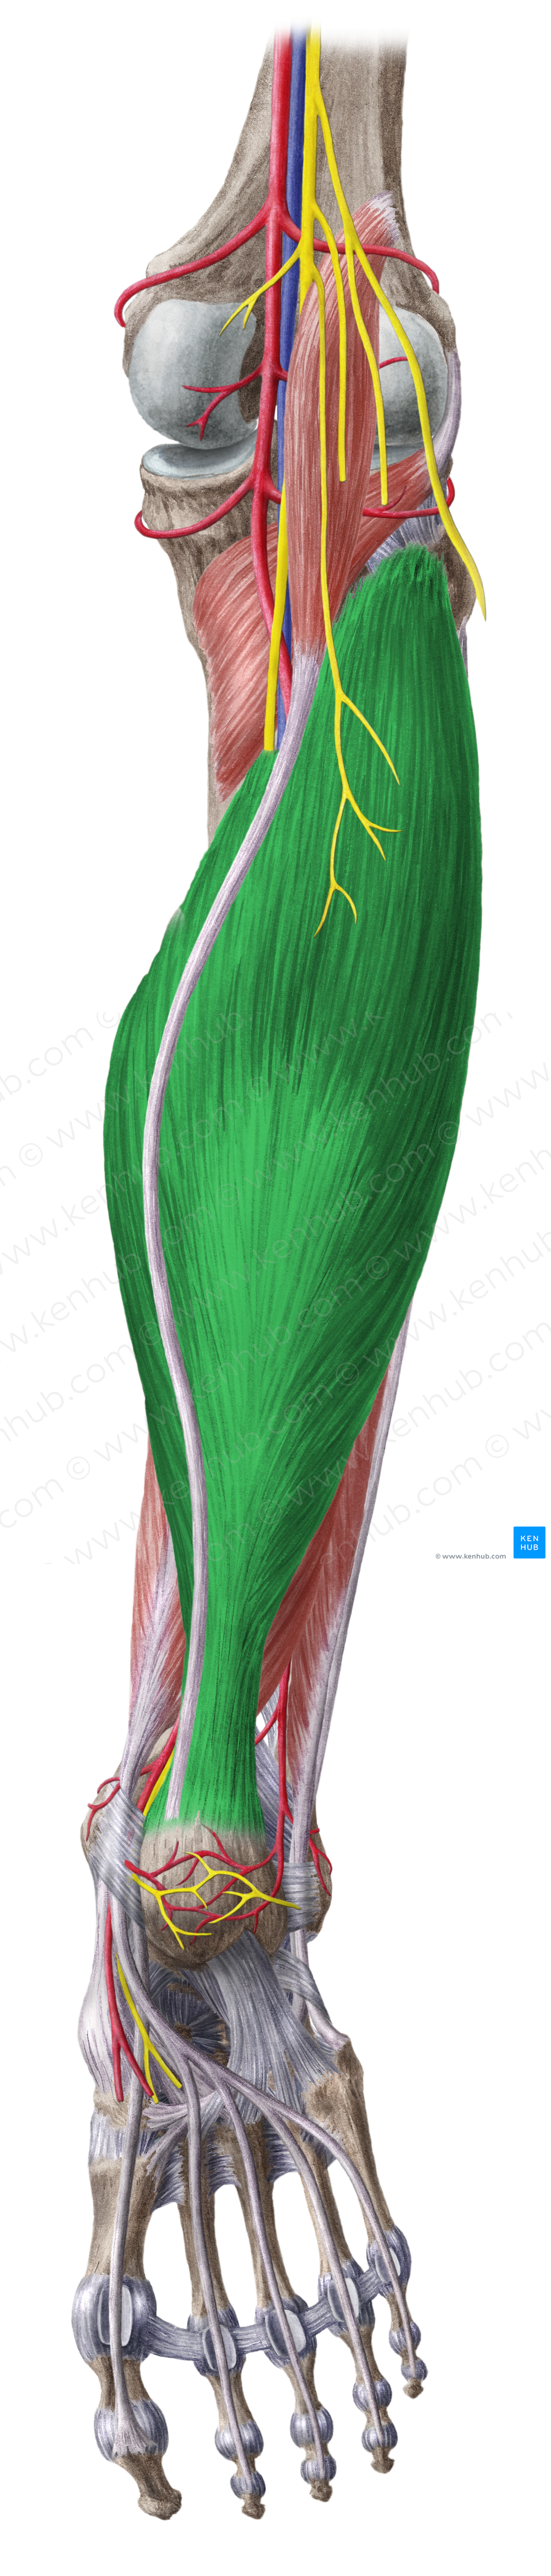 Soleus muscle (#5961)